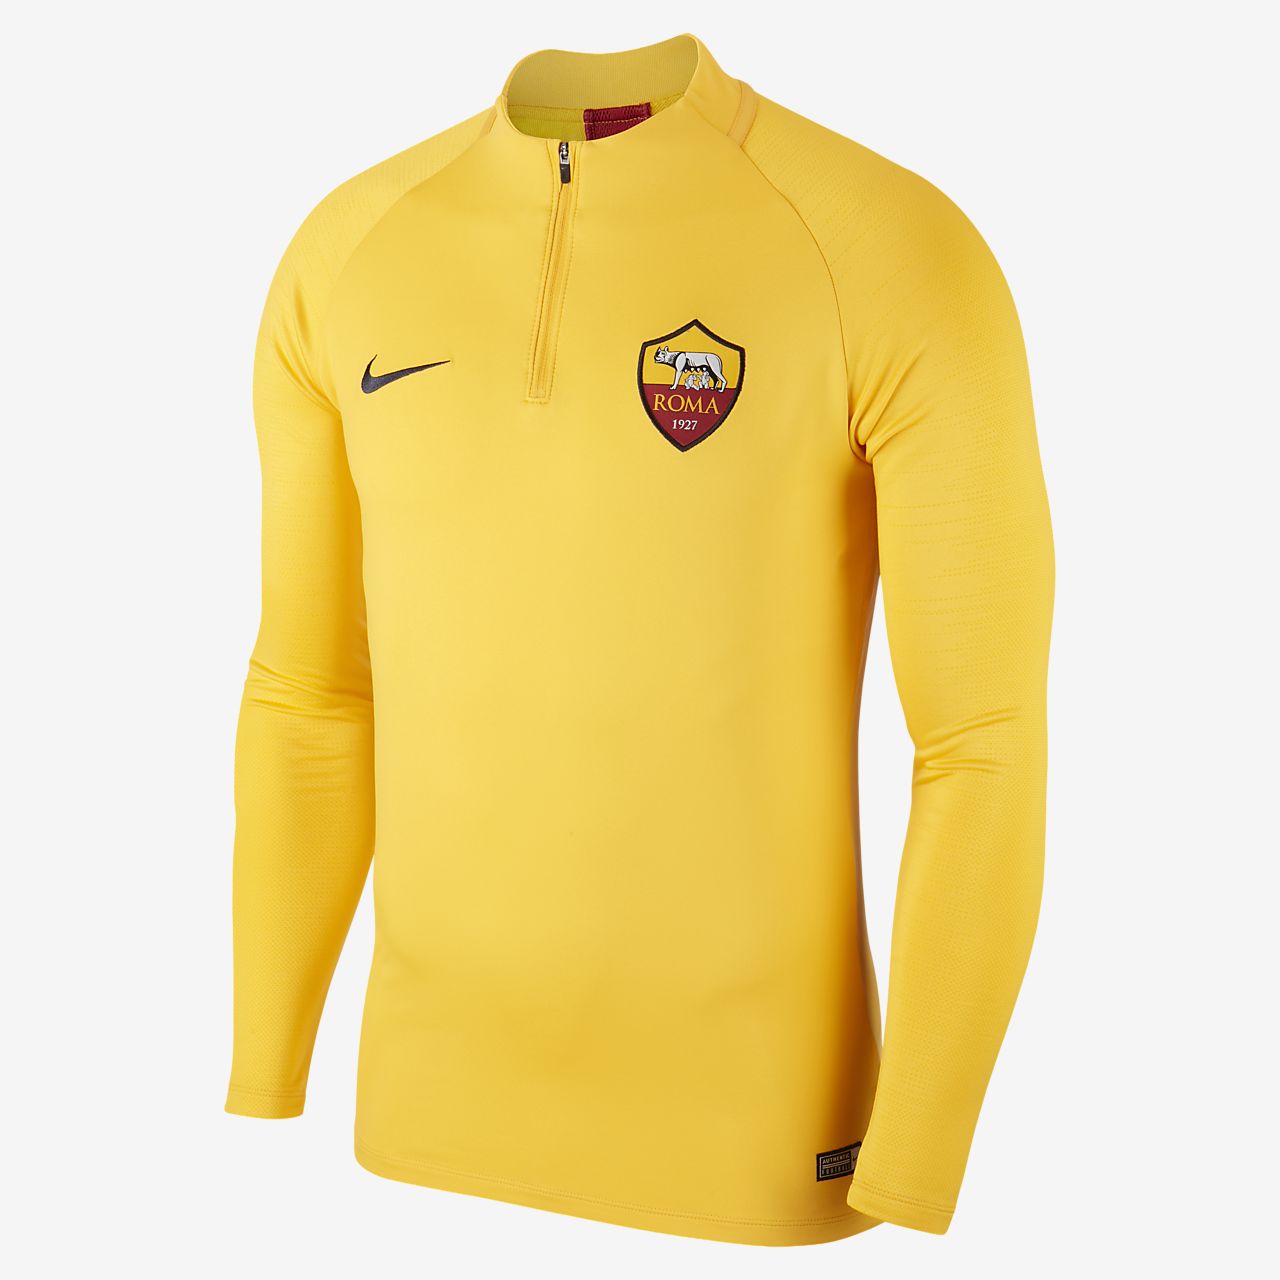 roma yellow jersey